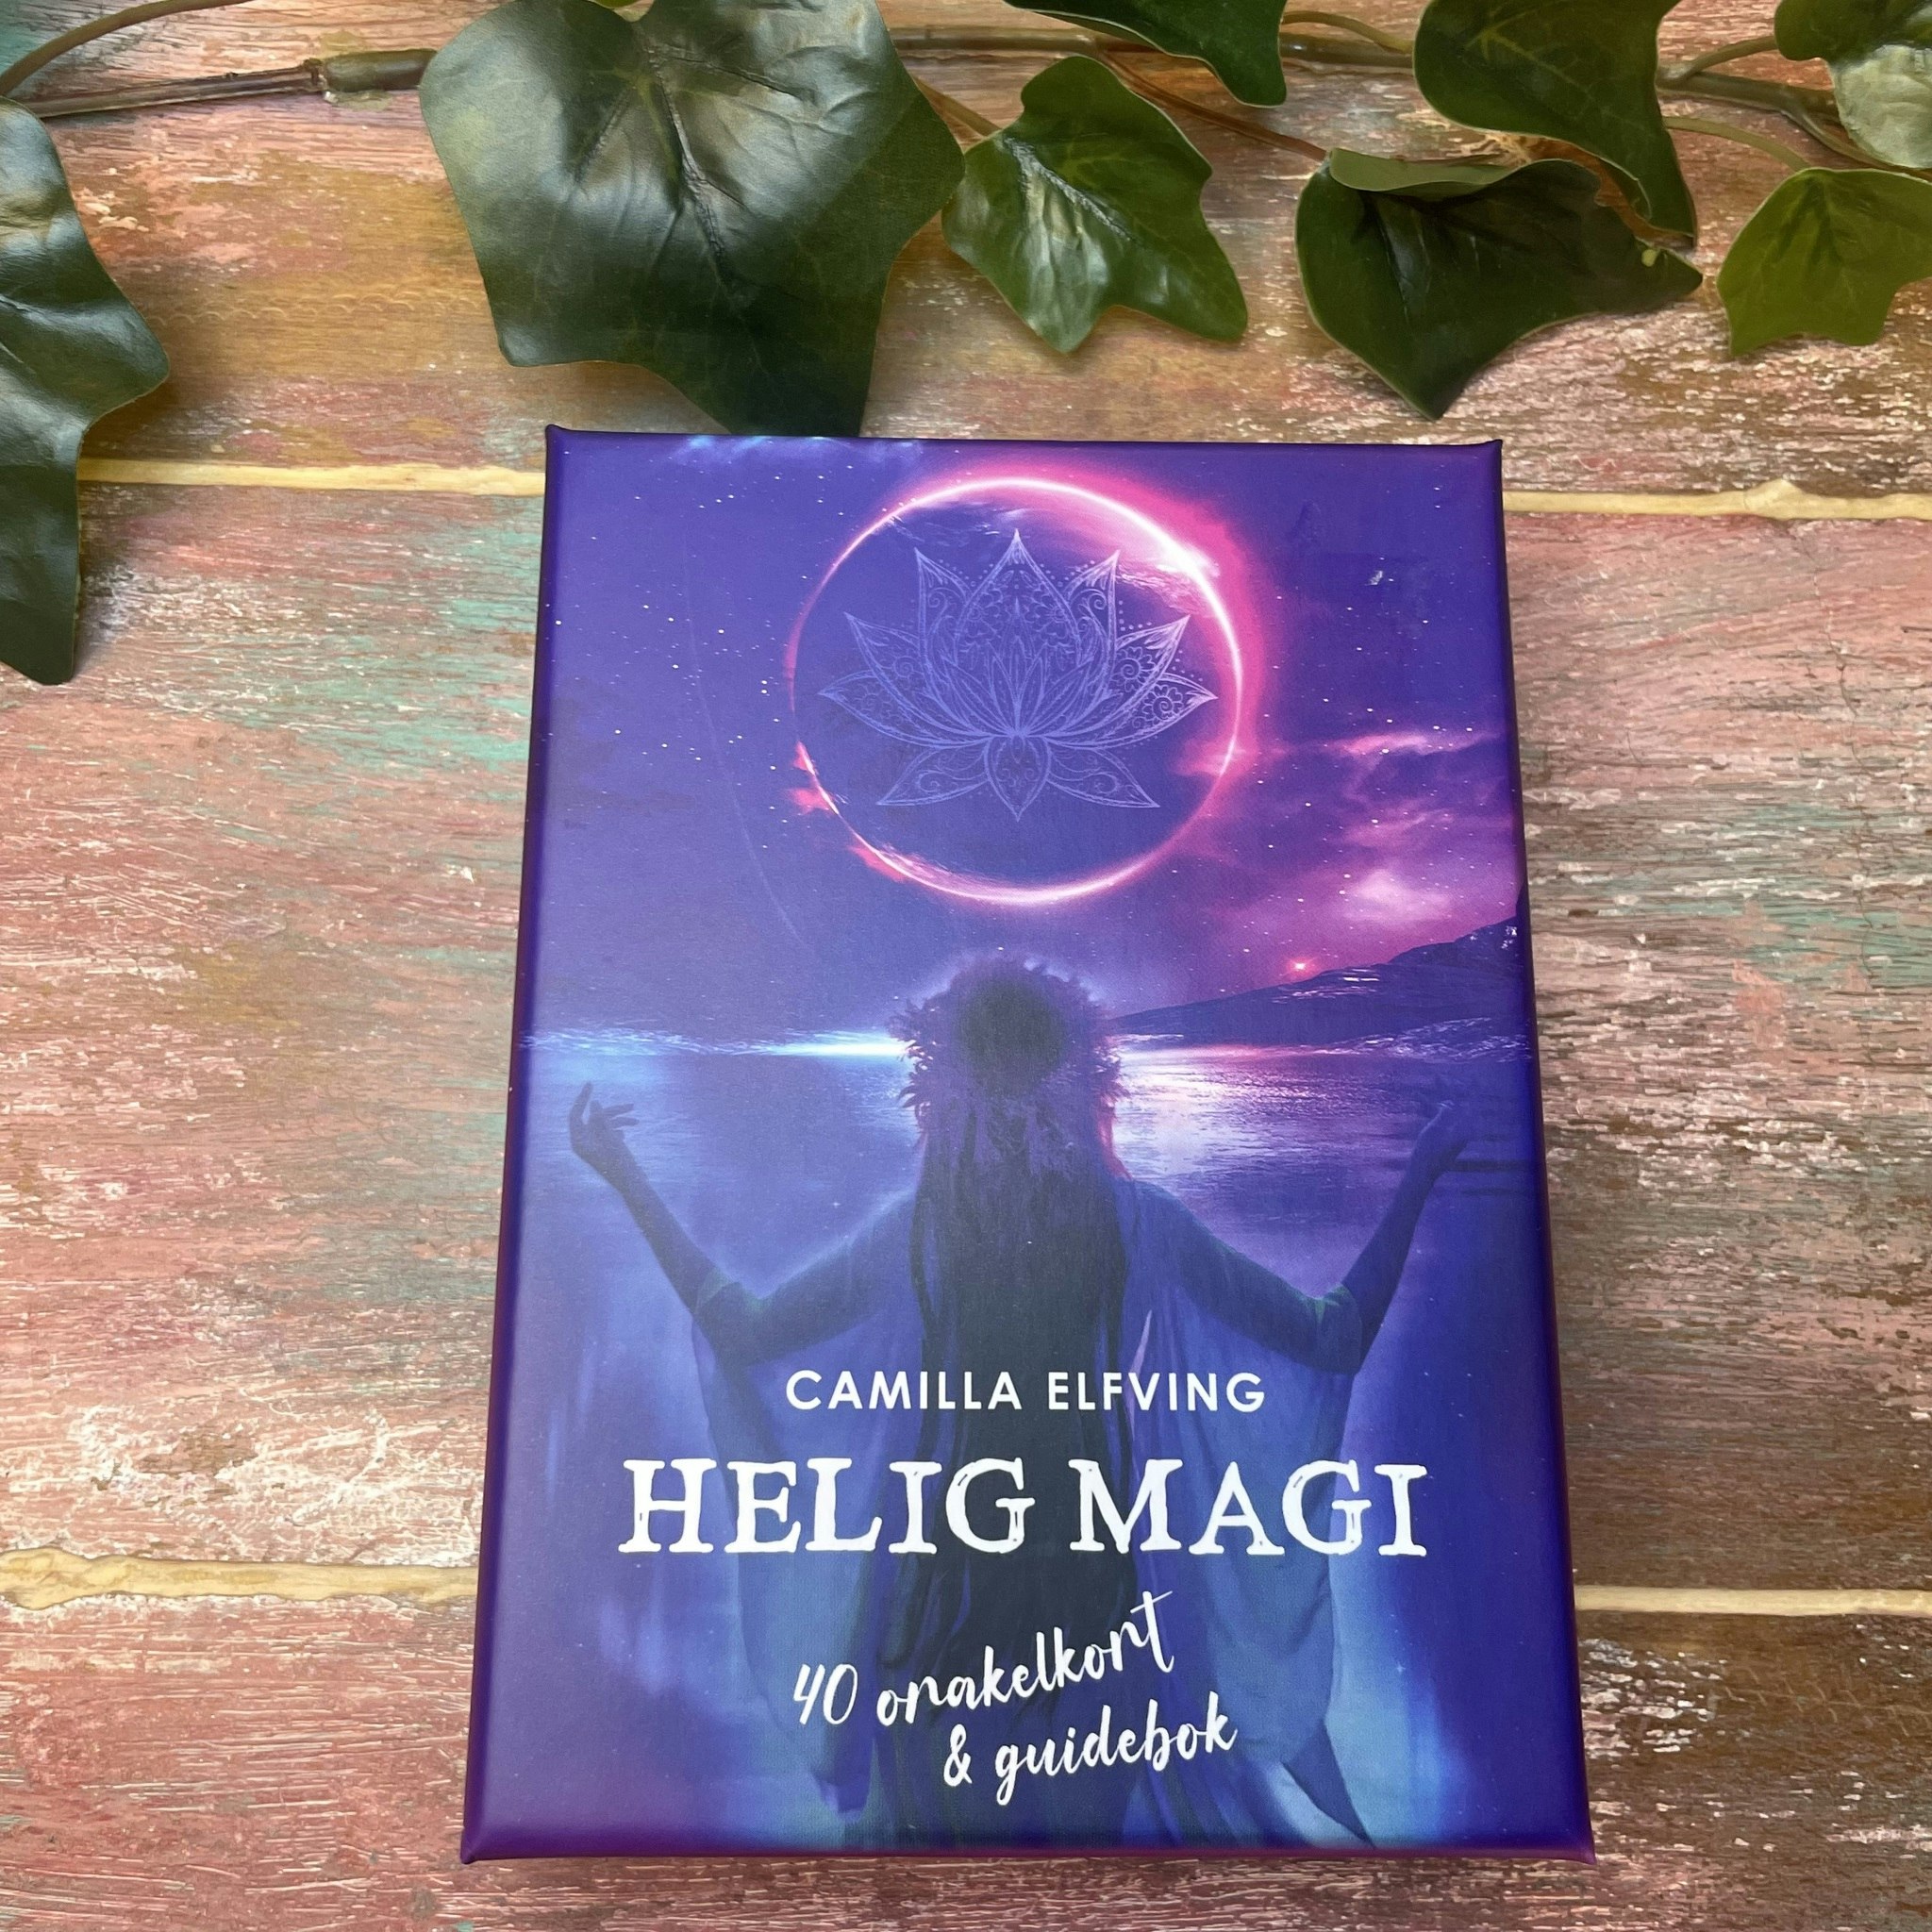 Helig magi orakelkort av Camilla Elfving (Svenska)